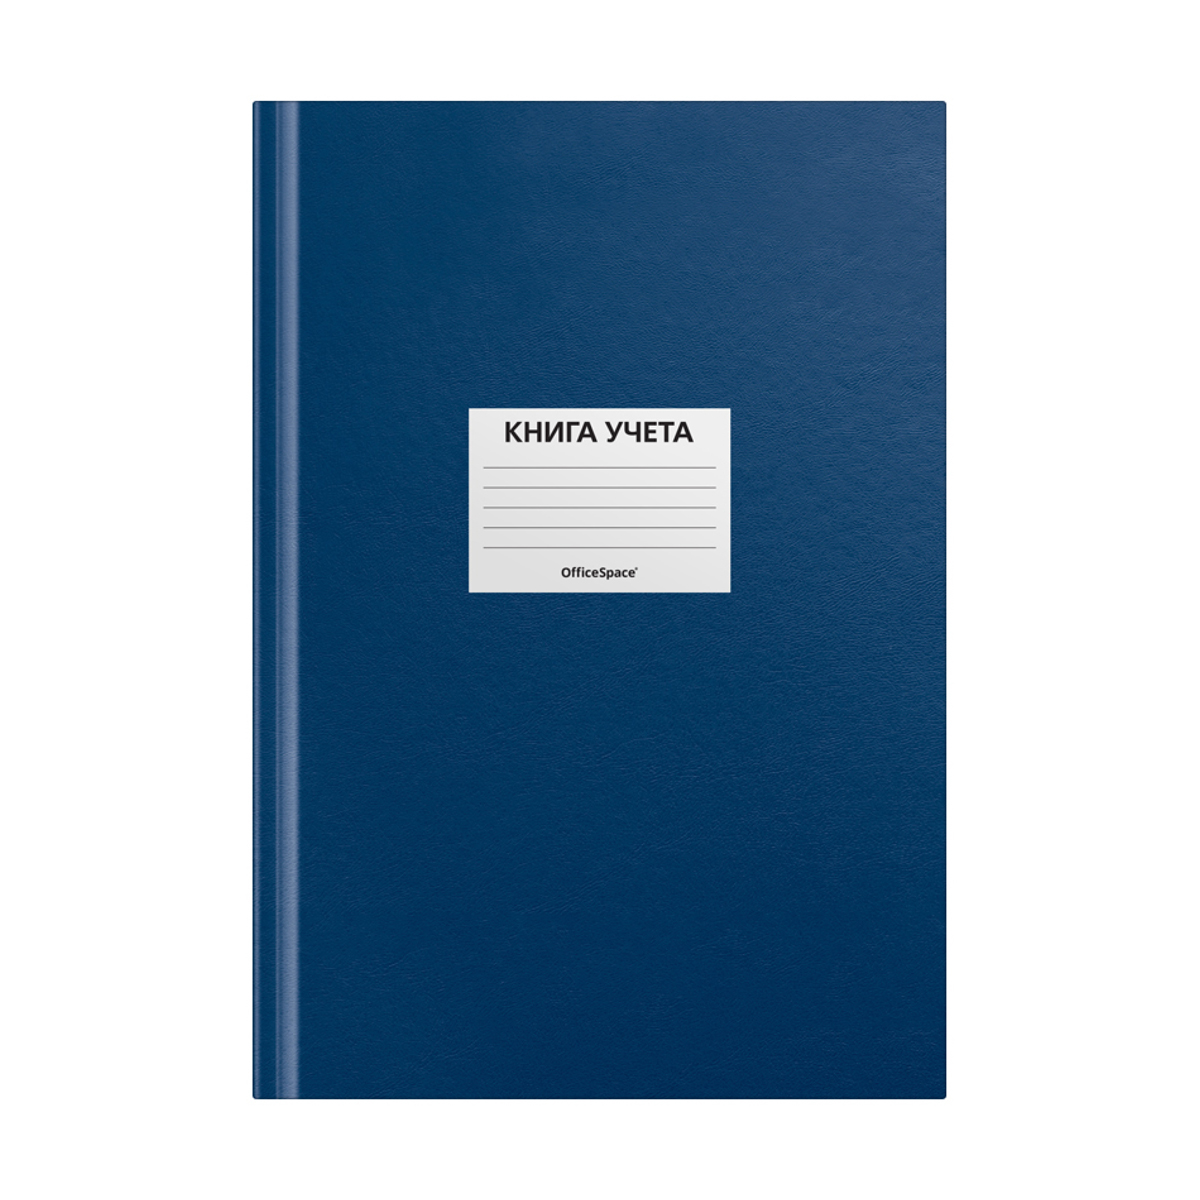 Книга учета OfficeSpace, А4, 144л., клетка, 200*290мм, бумвинил, цвет синий, блок офсетный, наклейка